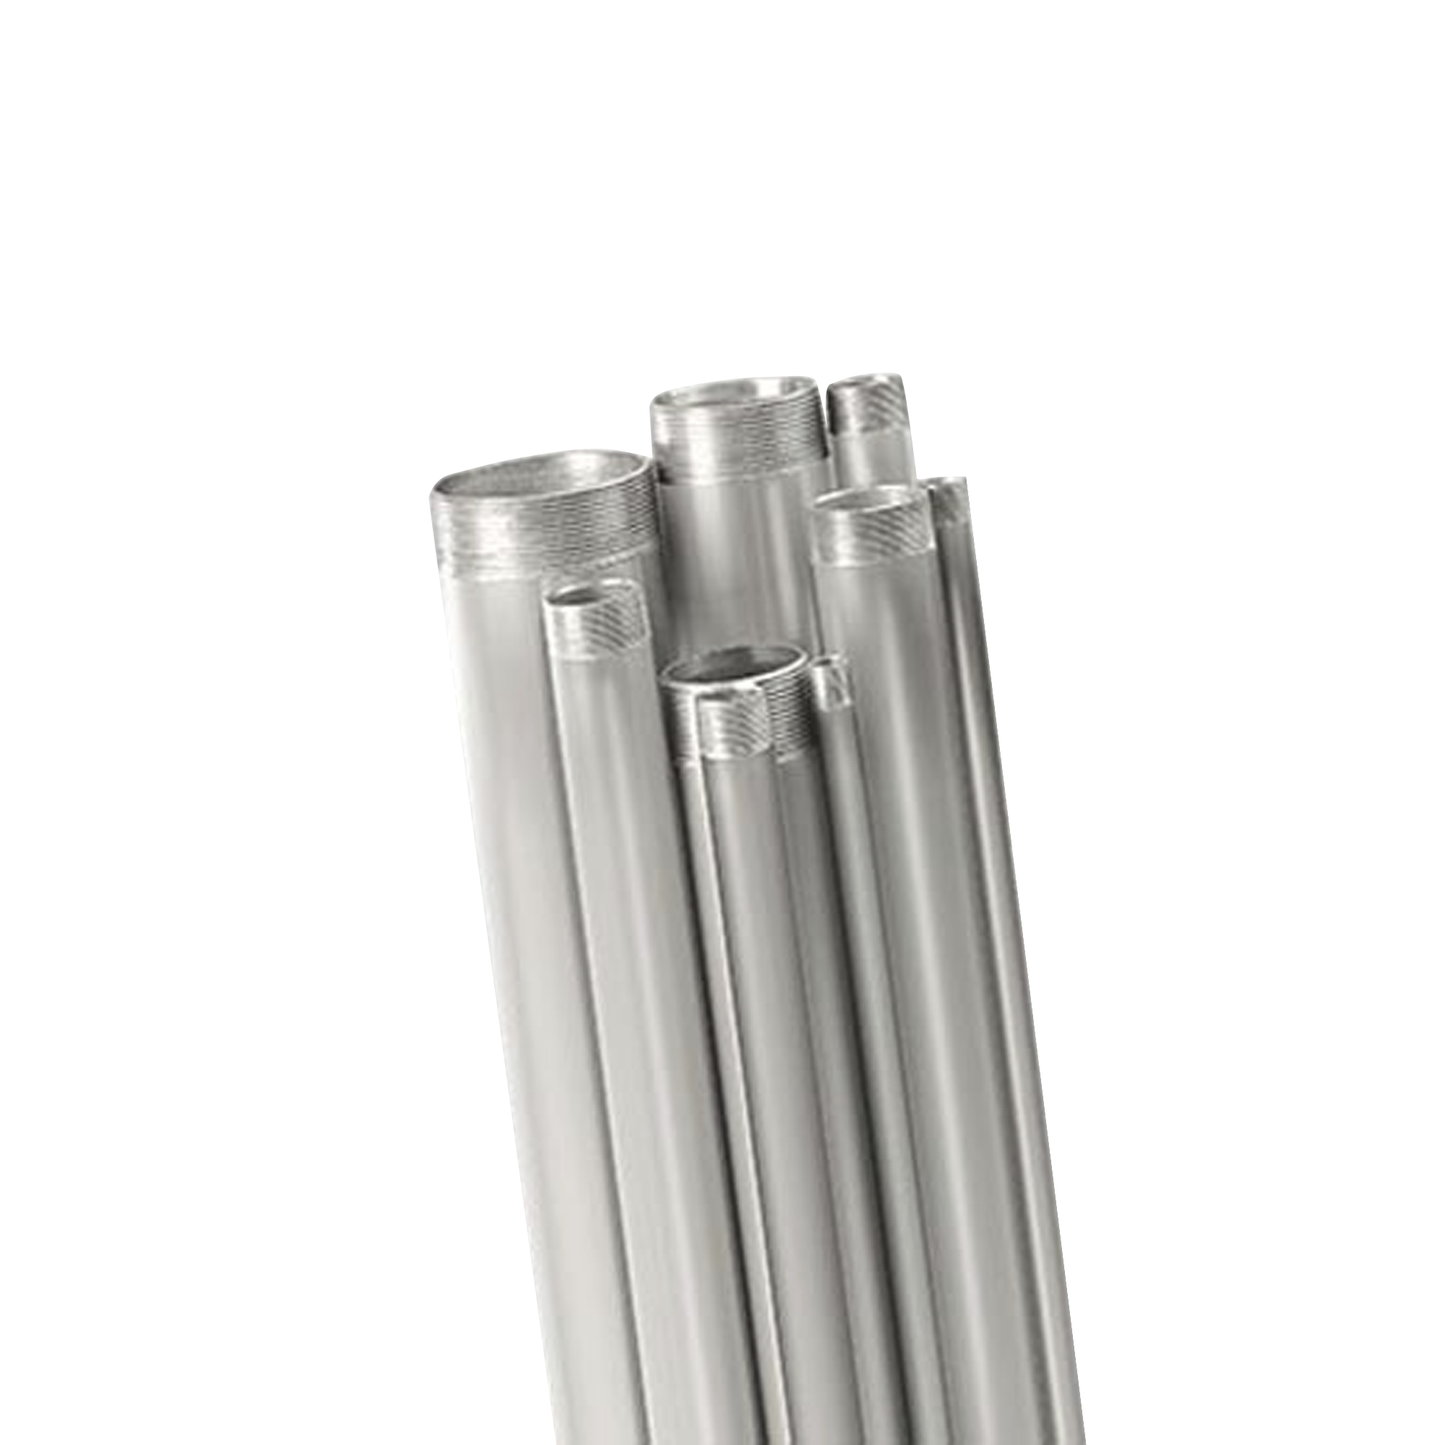 Tubo conduit rígido de aluminio de 3” (76.2 mm) de 3.05 mts con cople.